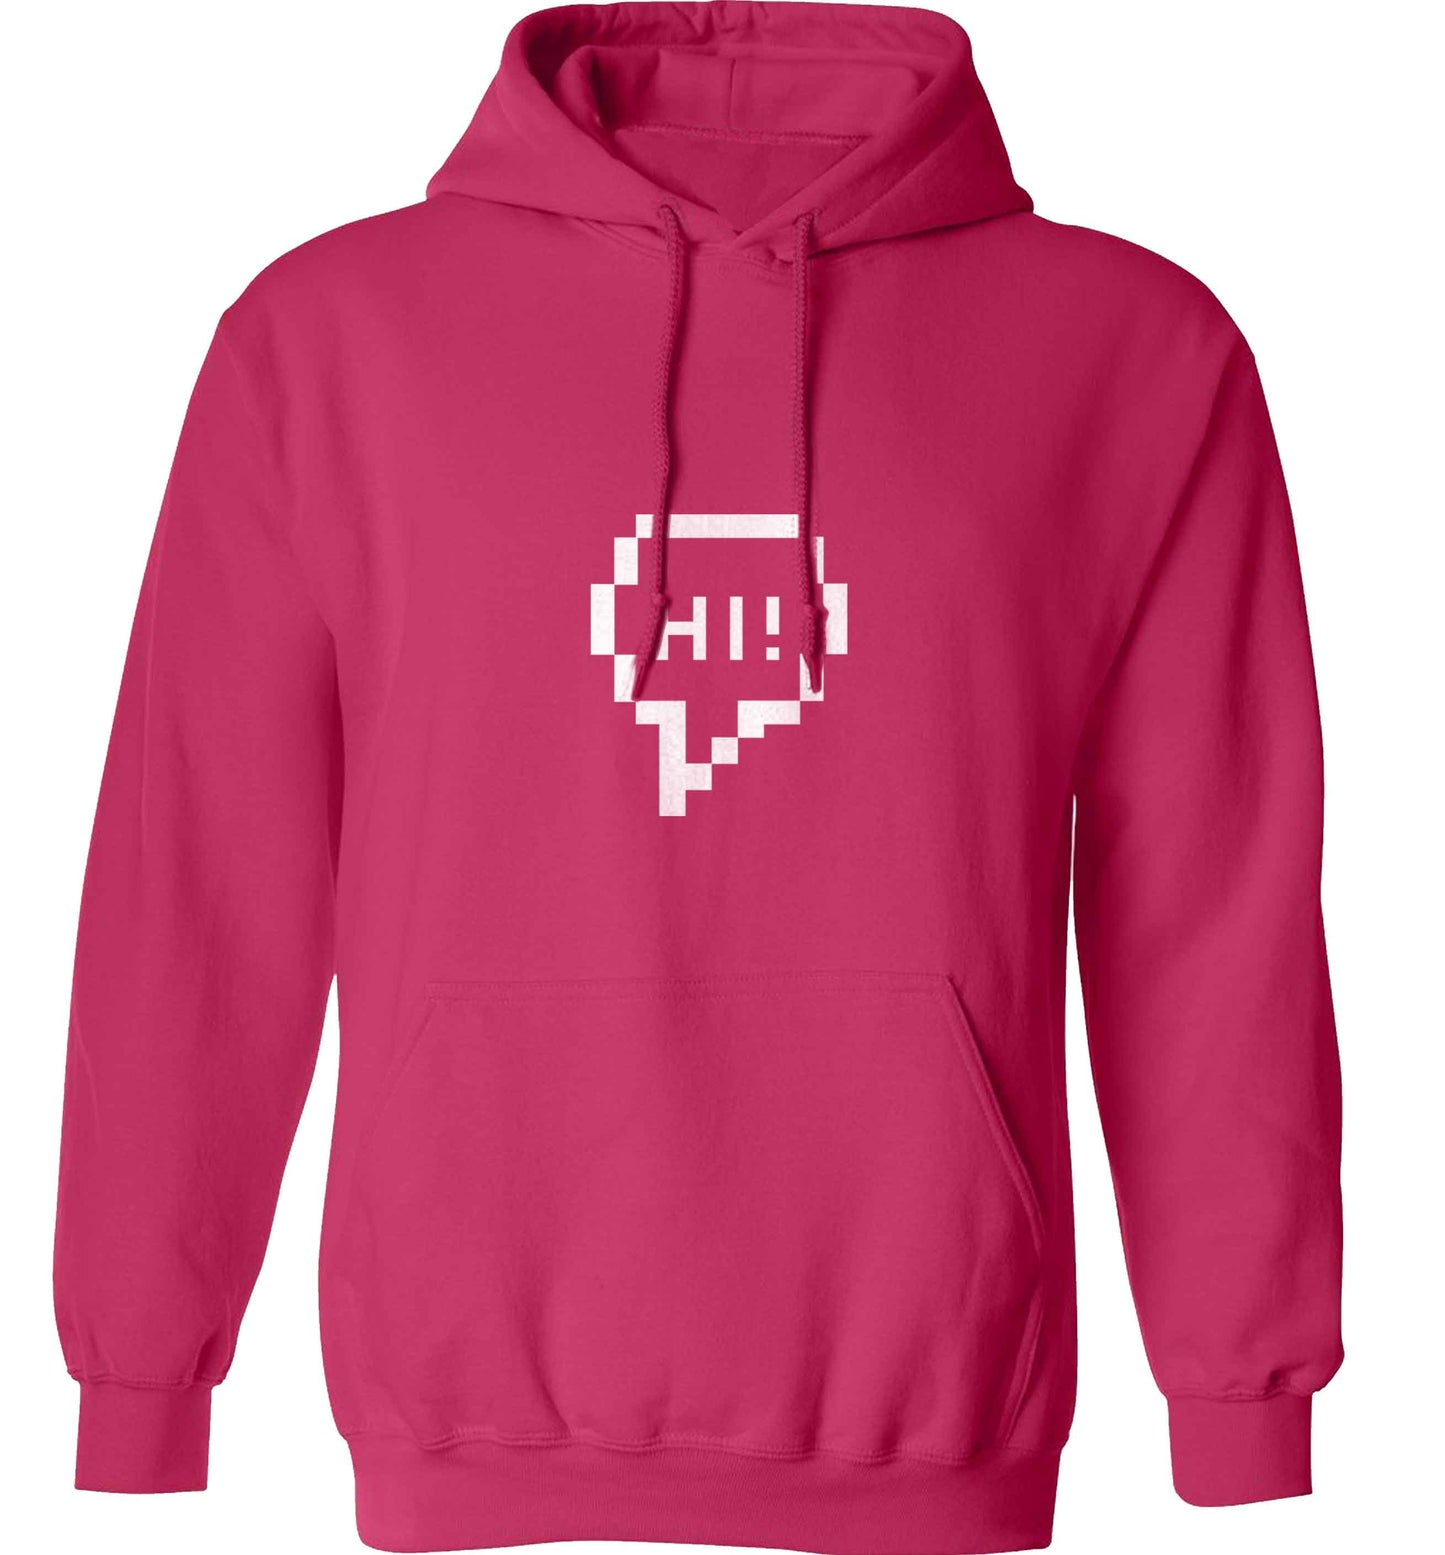 Hi adults unisex pink hoodie 2XL